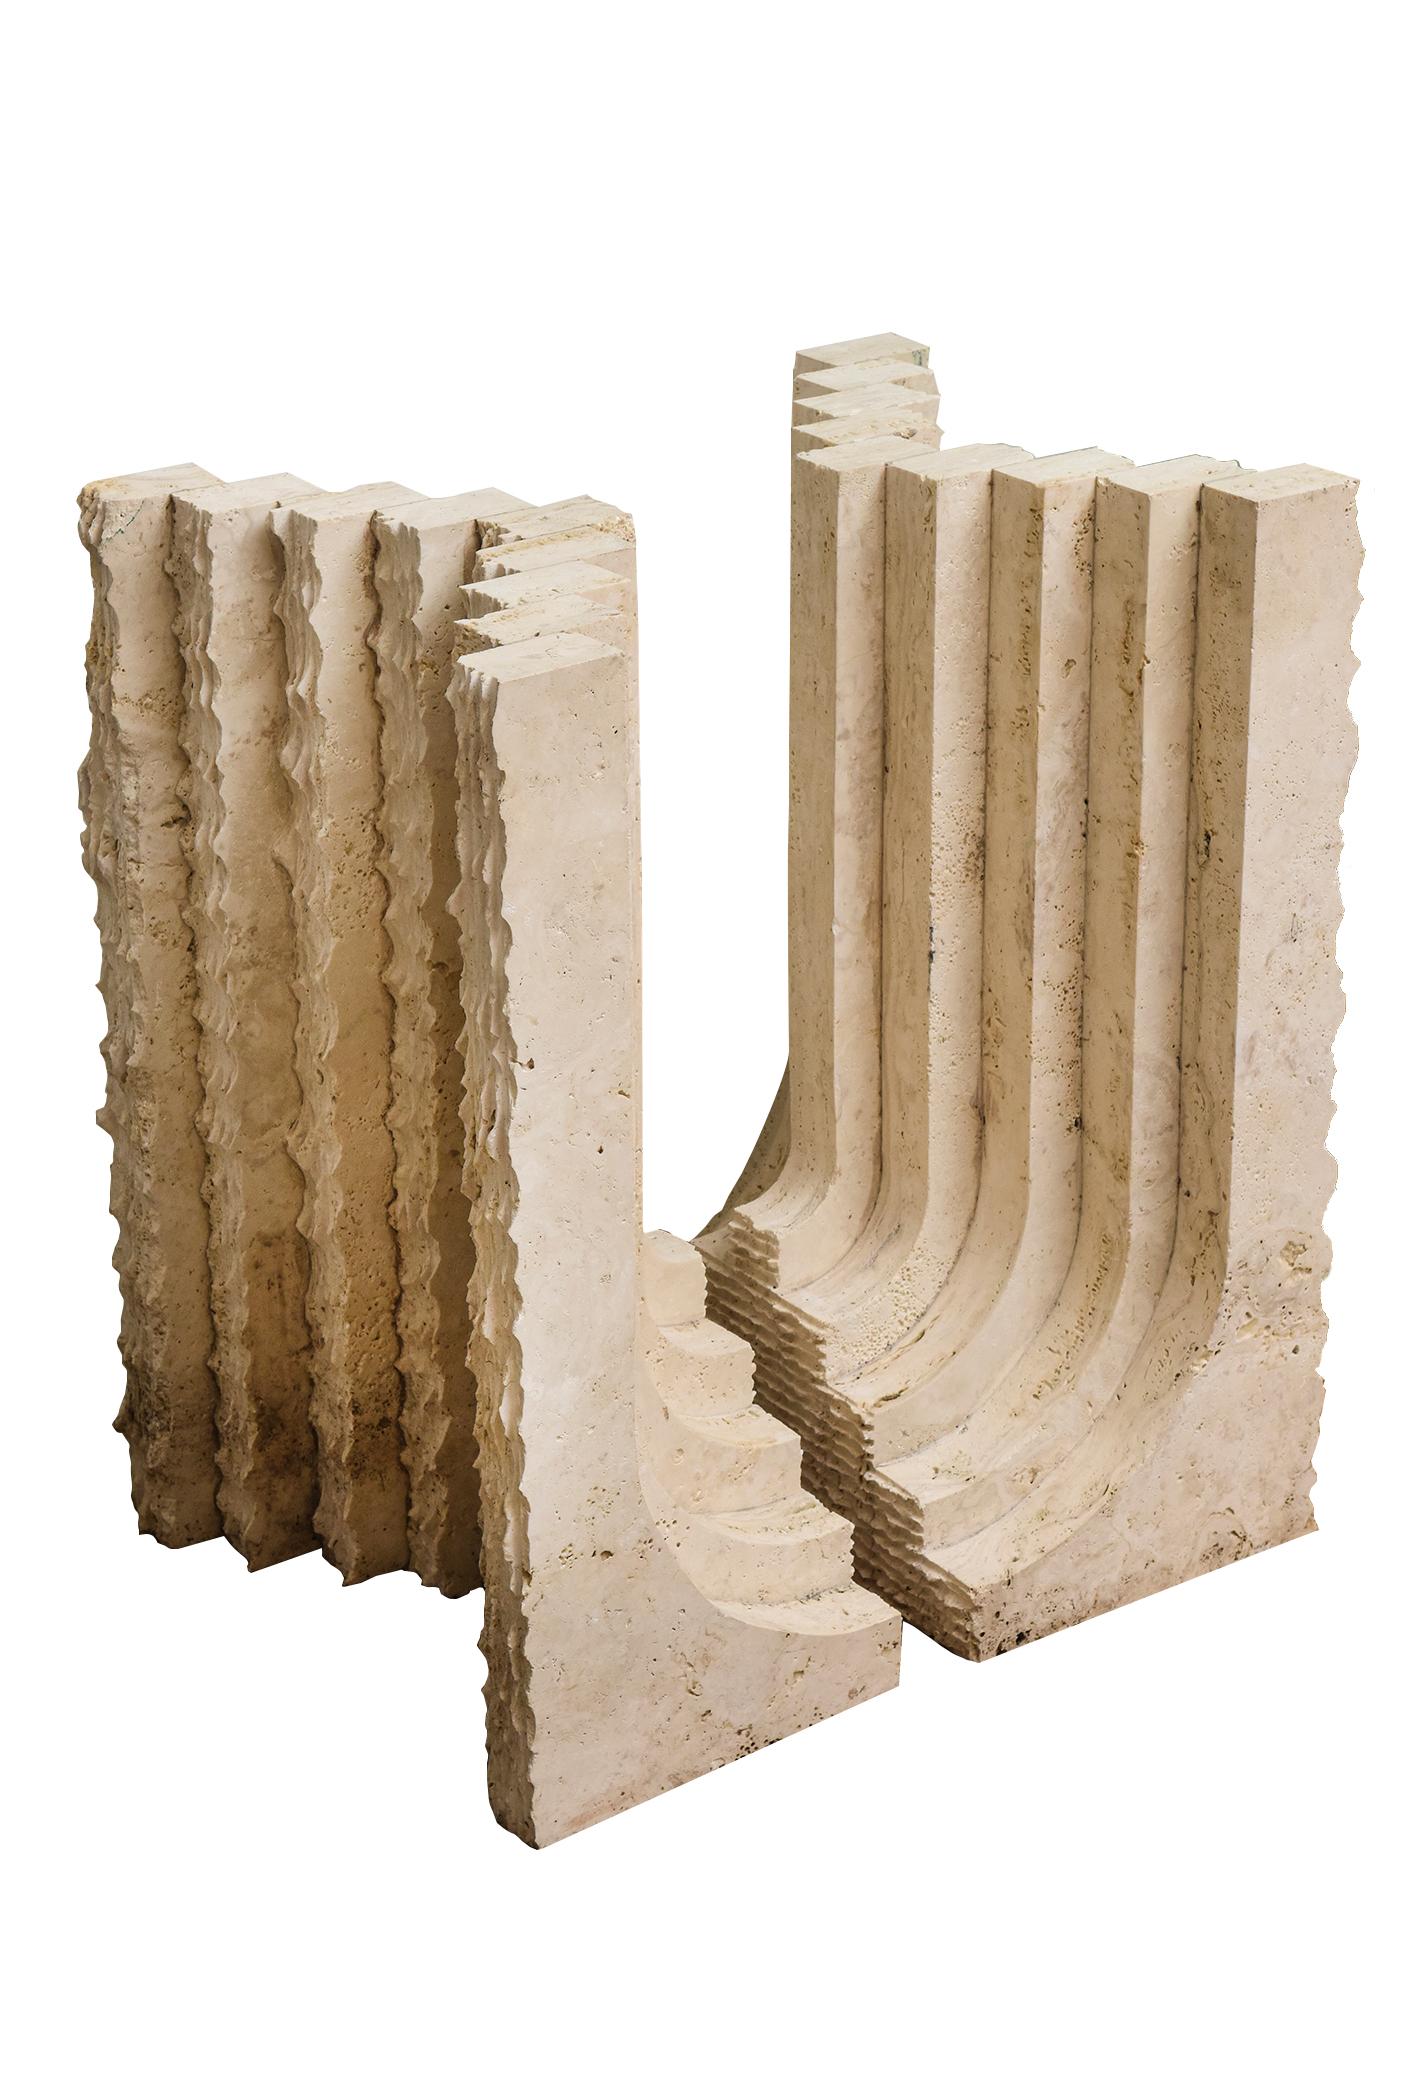 Cette paire étonnante de bases de table en pierre corallienne organique, moderne et authentique, présente deux faces opposées, l'une rugueuse comme une dent de scie et l'autre plus lisse. Elles peuvent être orientées dans les deux sens pour votre